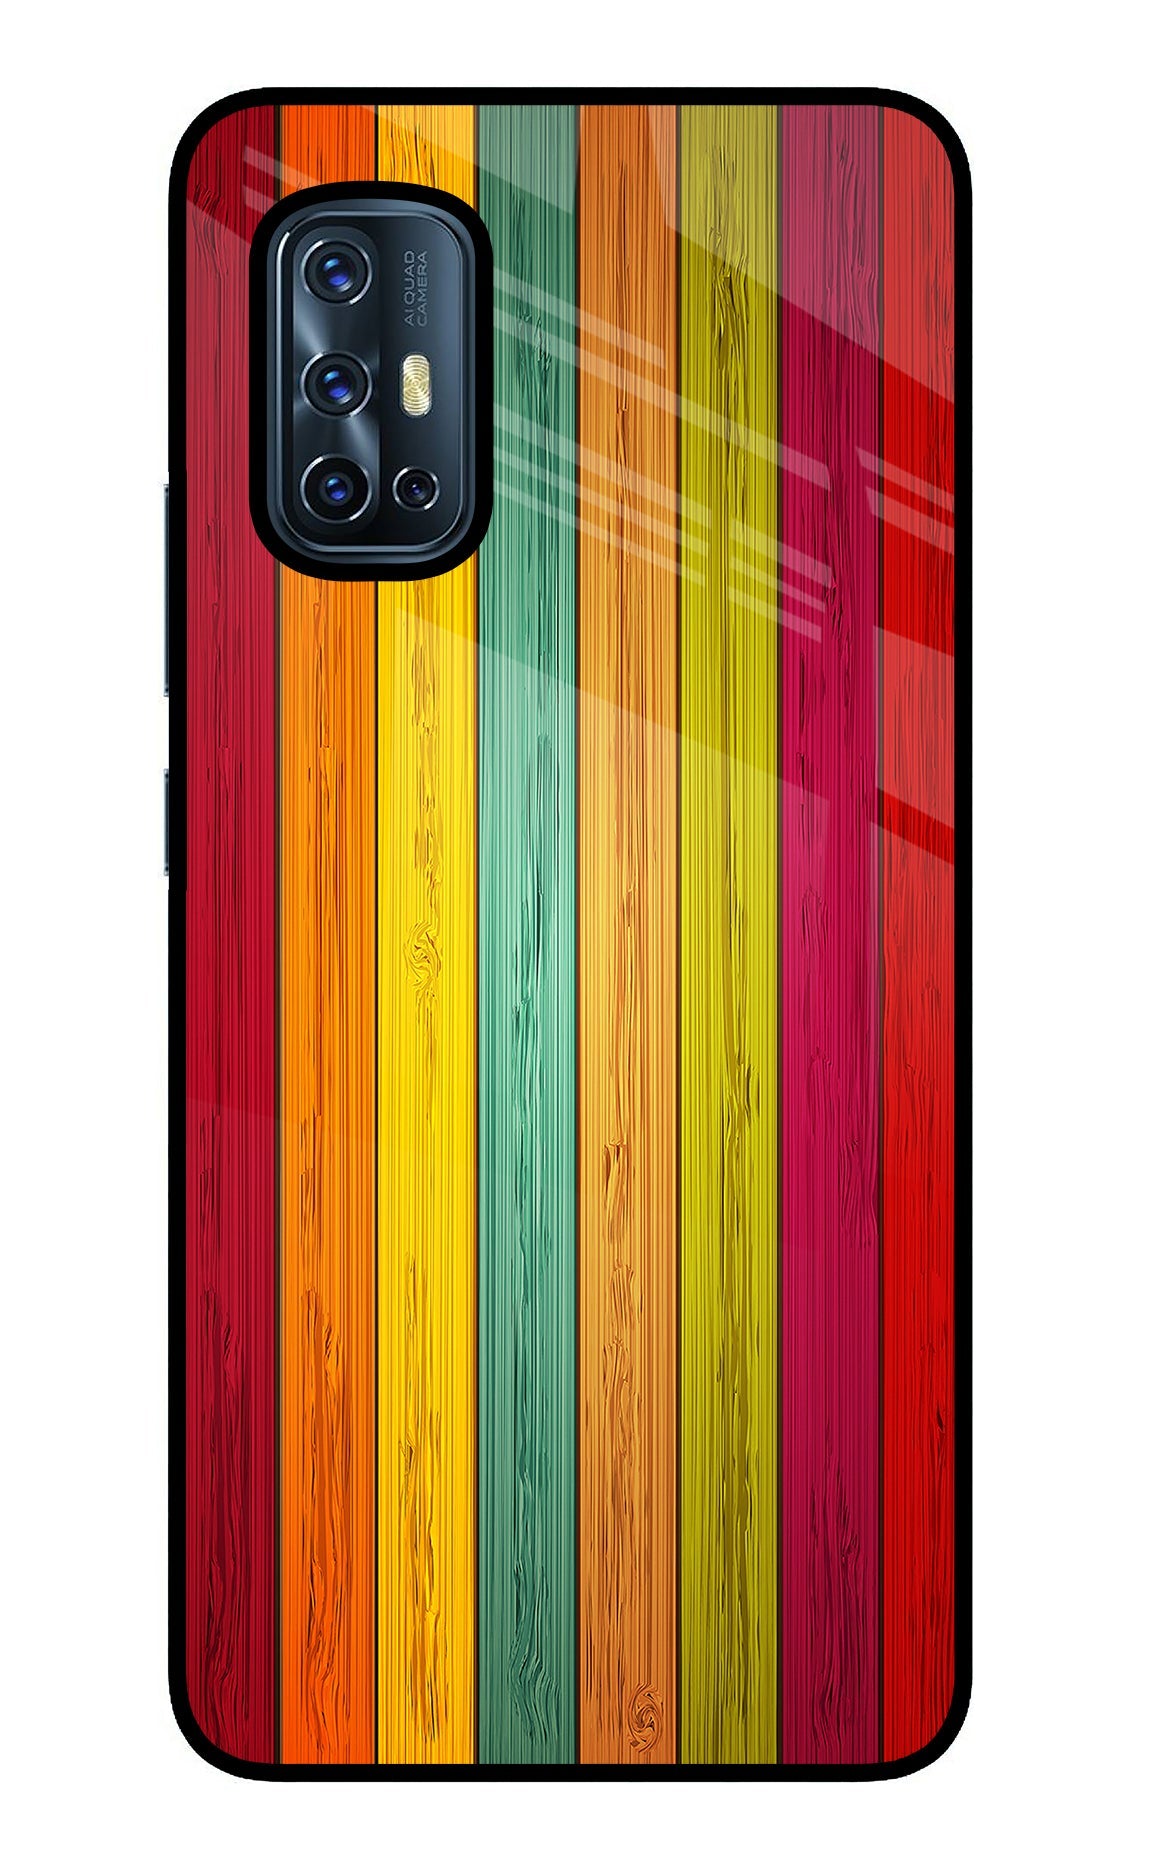 Multicolor Wooden Vivo V17 Glass Case